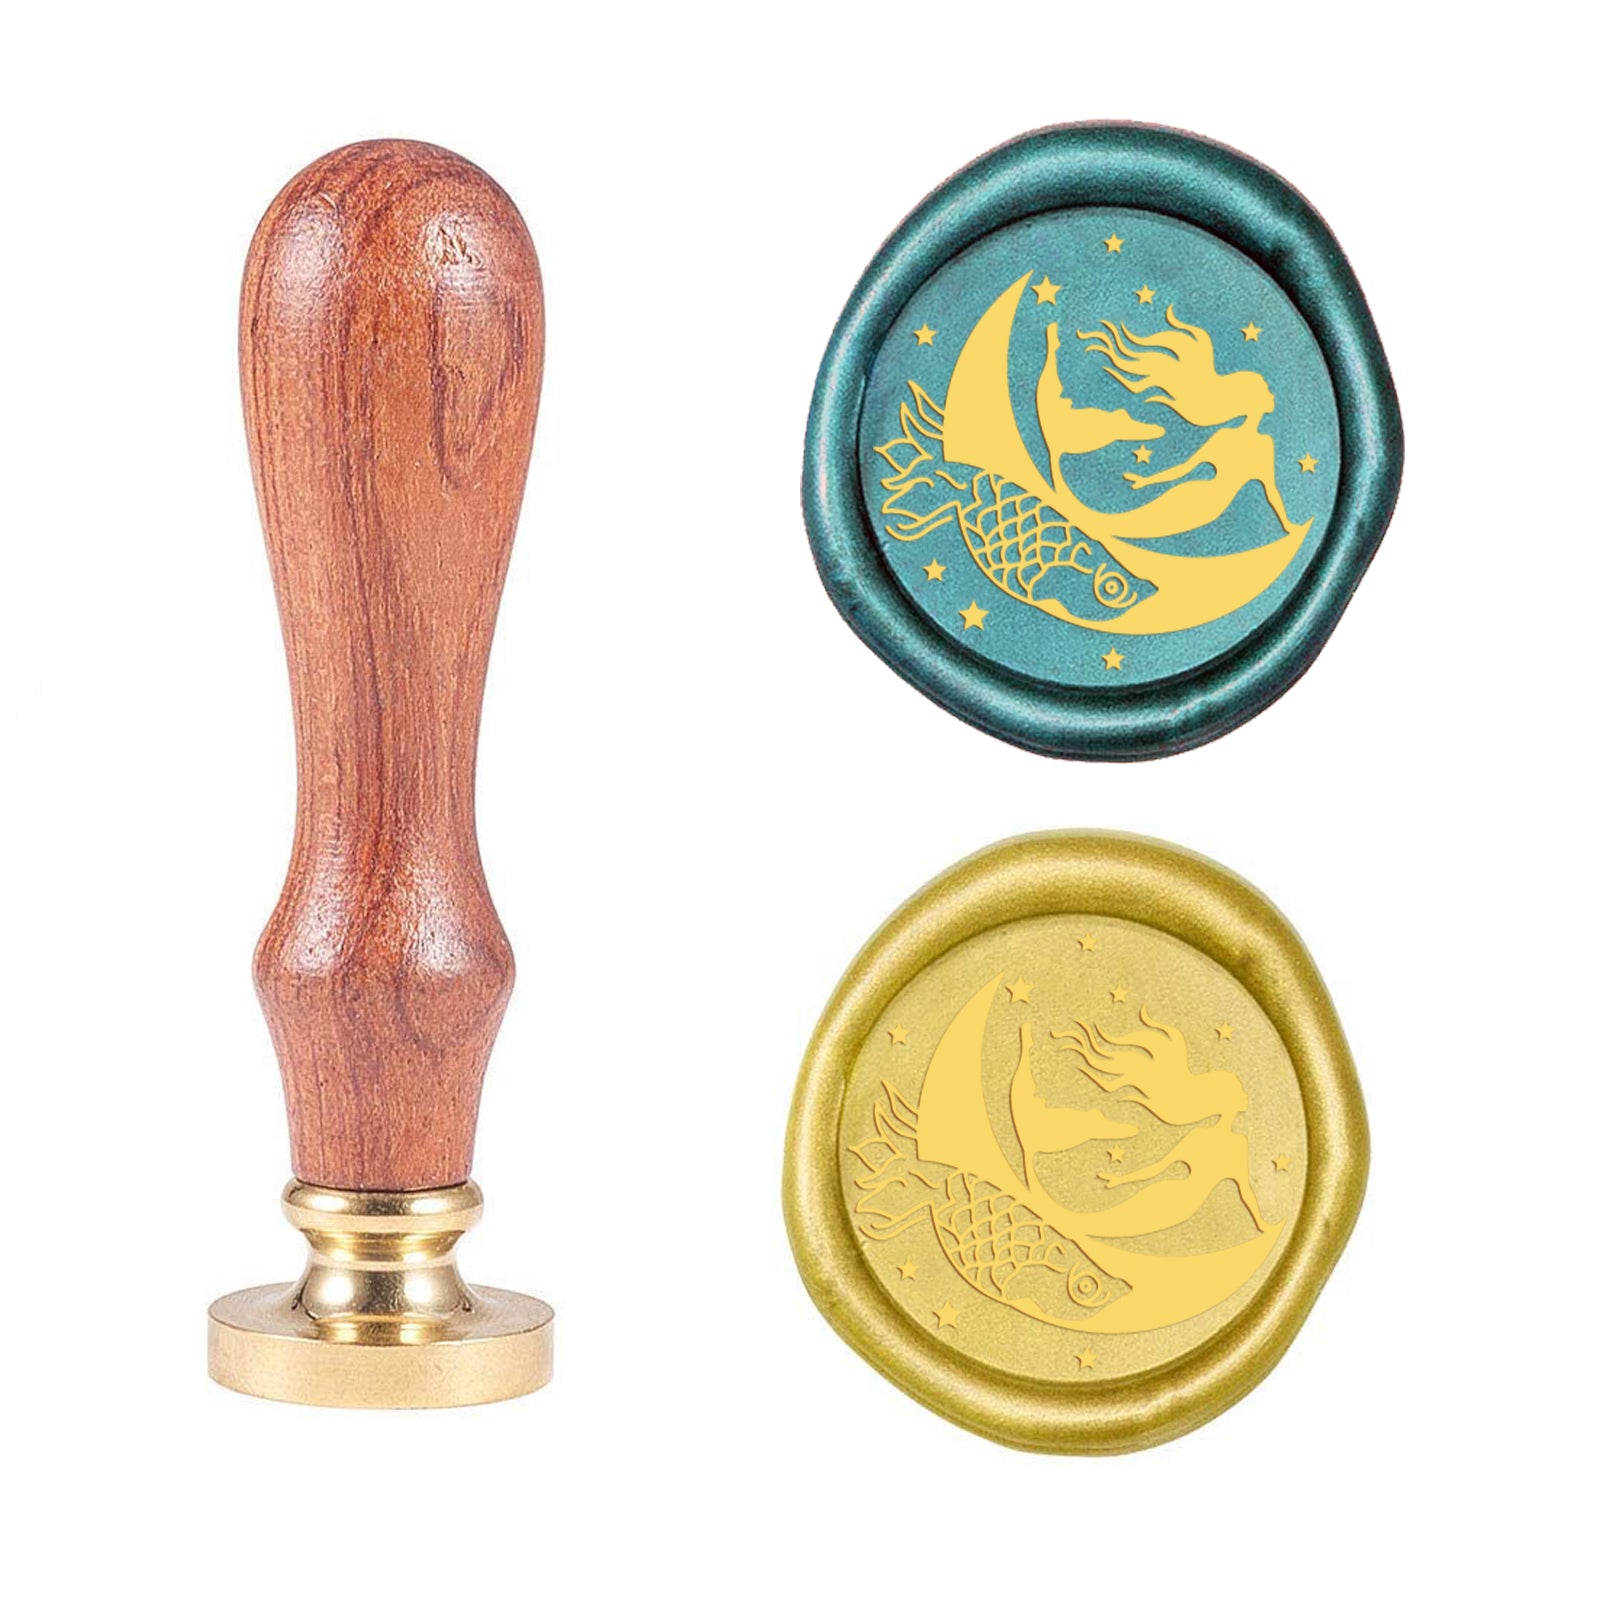 Mermaid Wood Handle Wax Seal Stamp